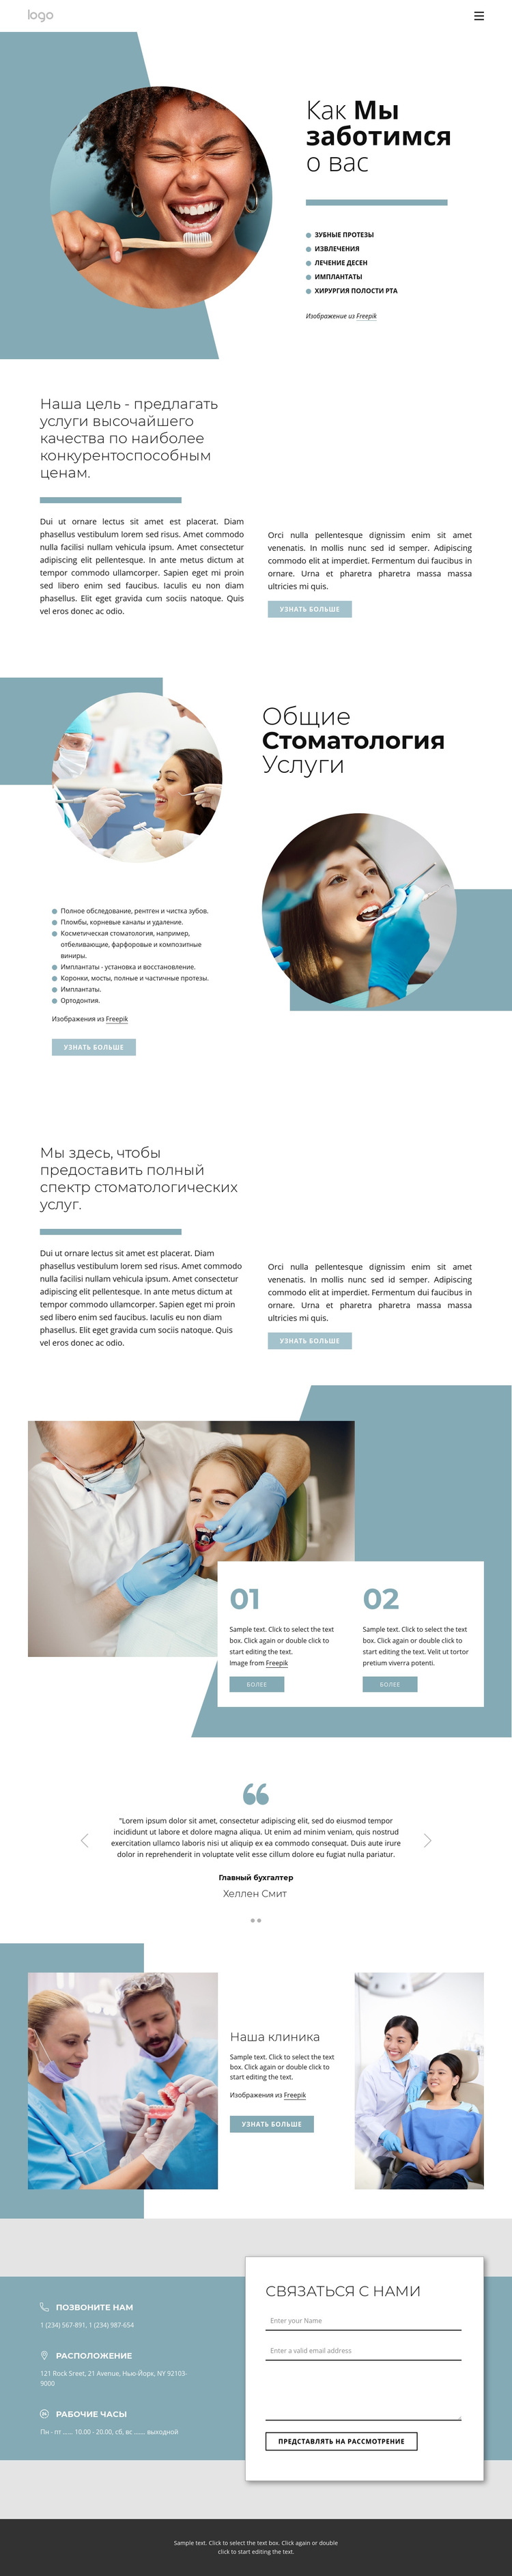 Качественные стоматологические услуги WordPress тема